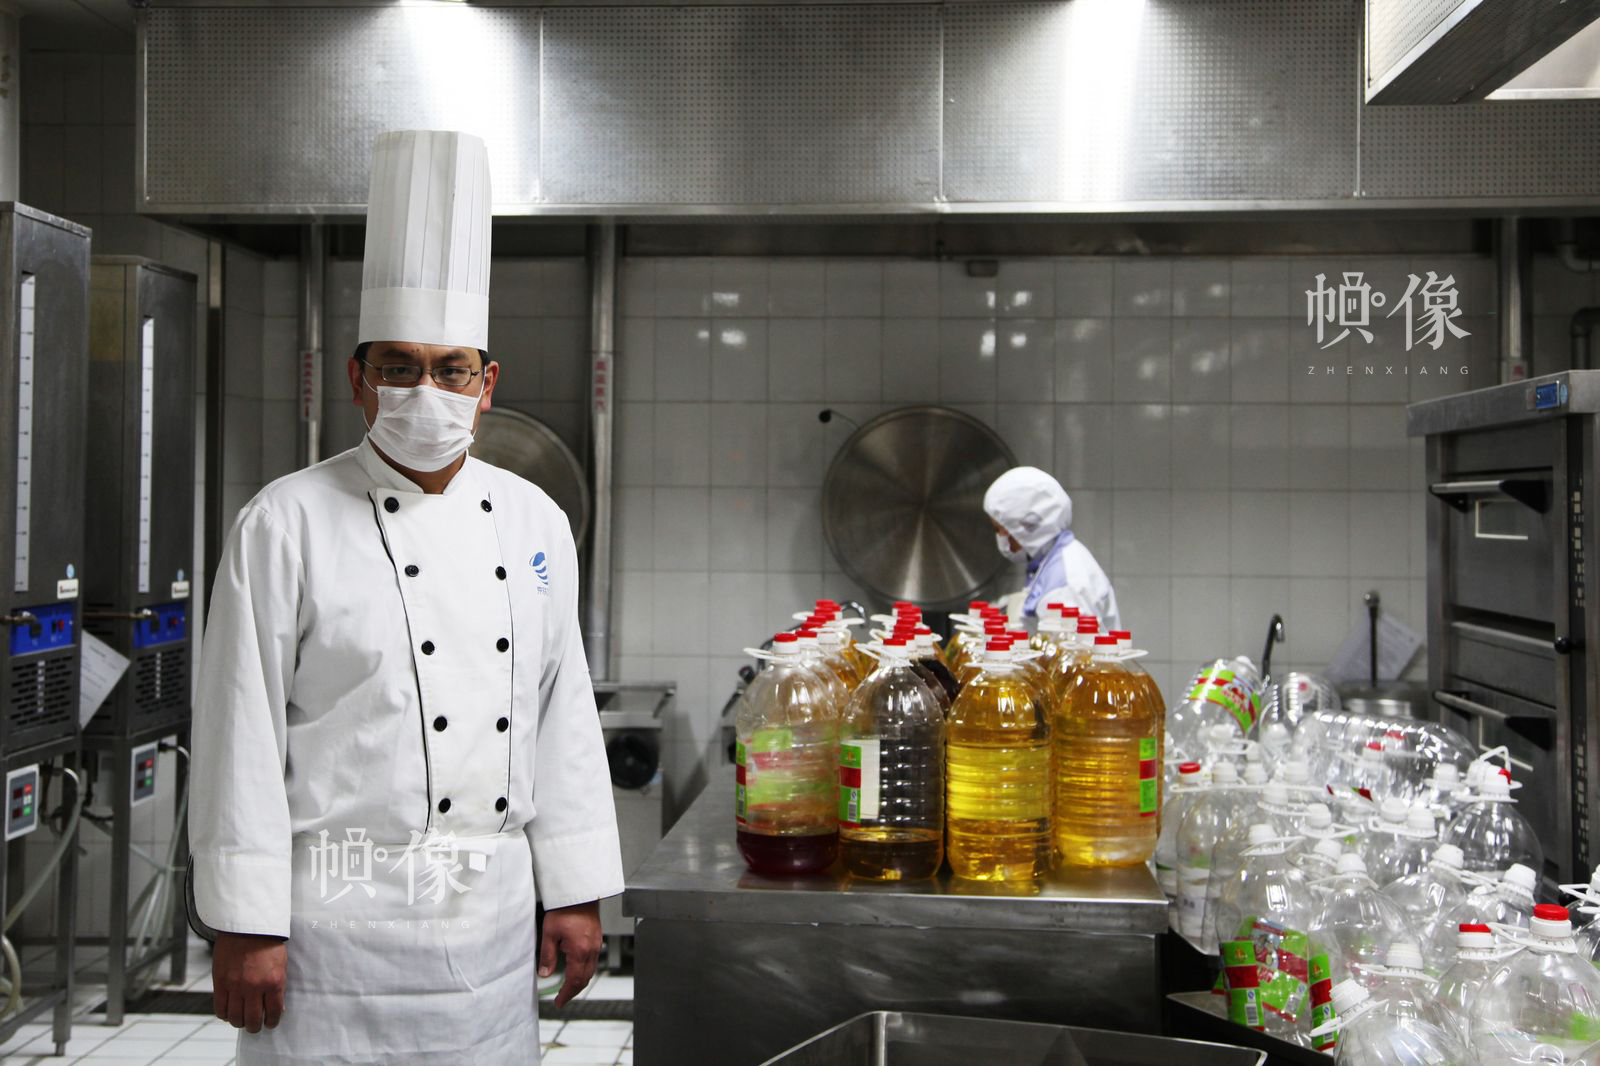 做菜用的油等调料。中国网记者 陈维松 摄